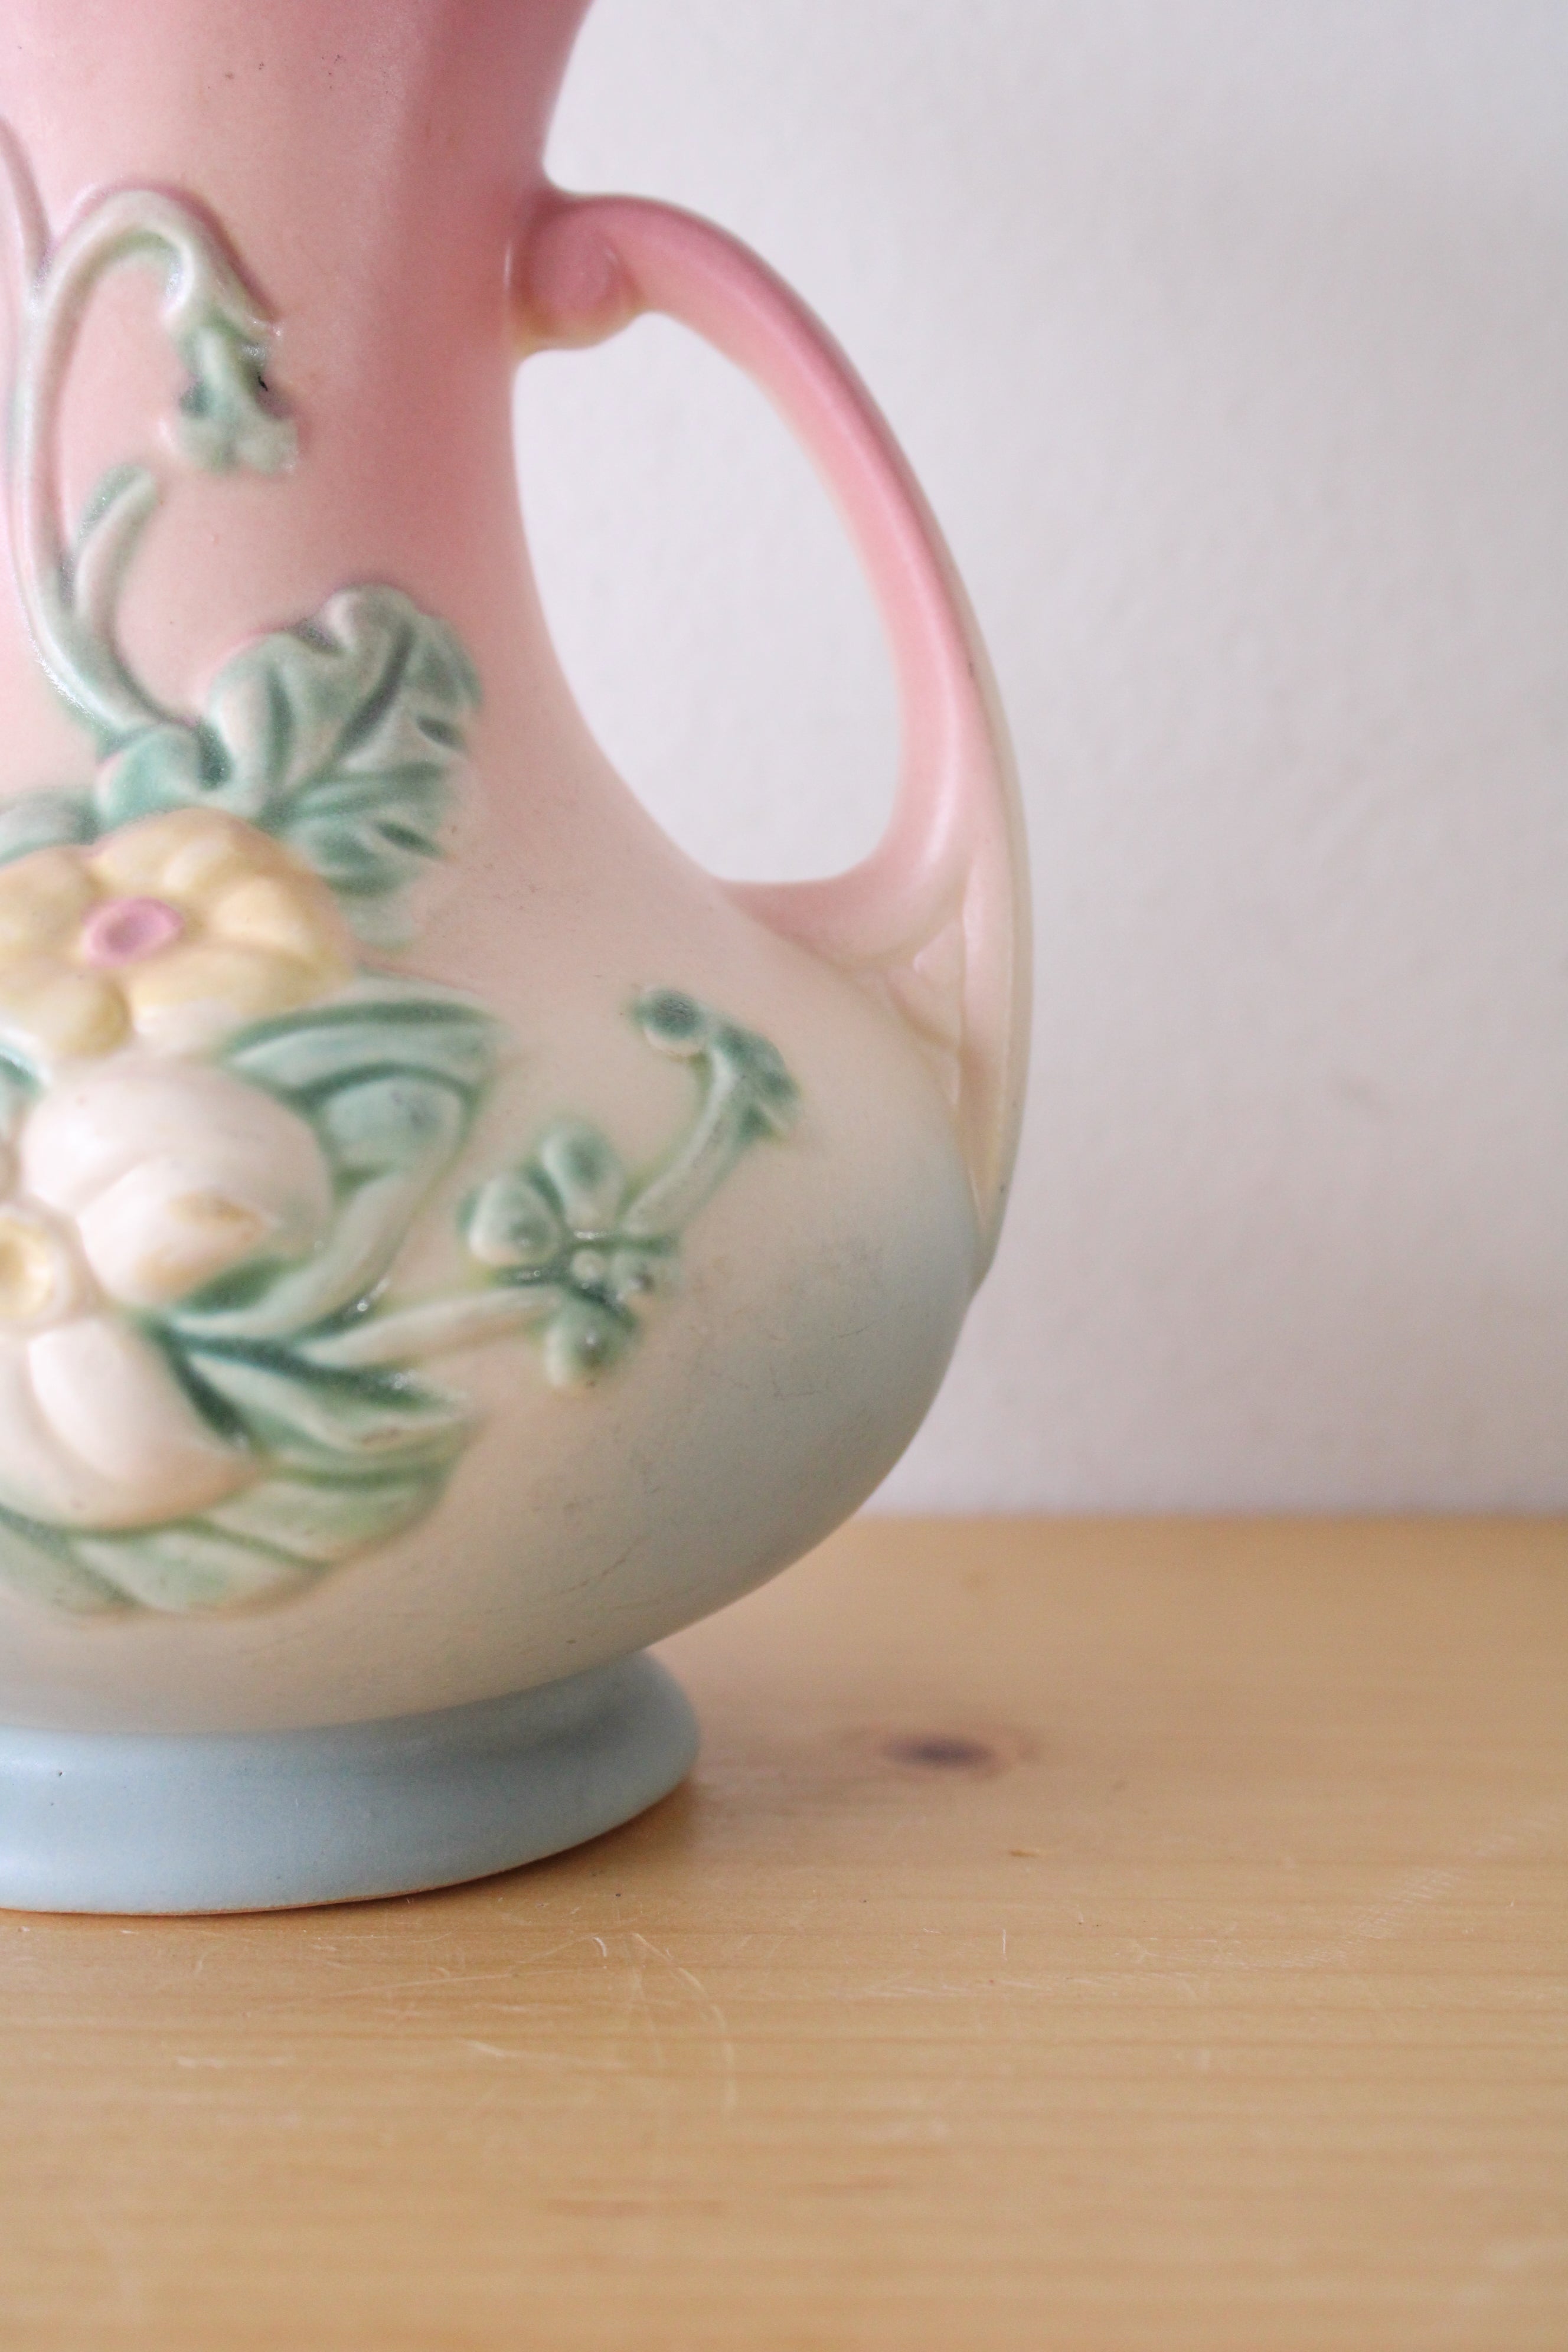 Hull Wildflower Pink Green Floral Vase